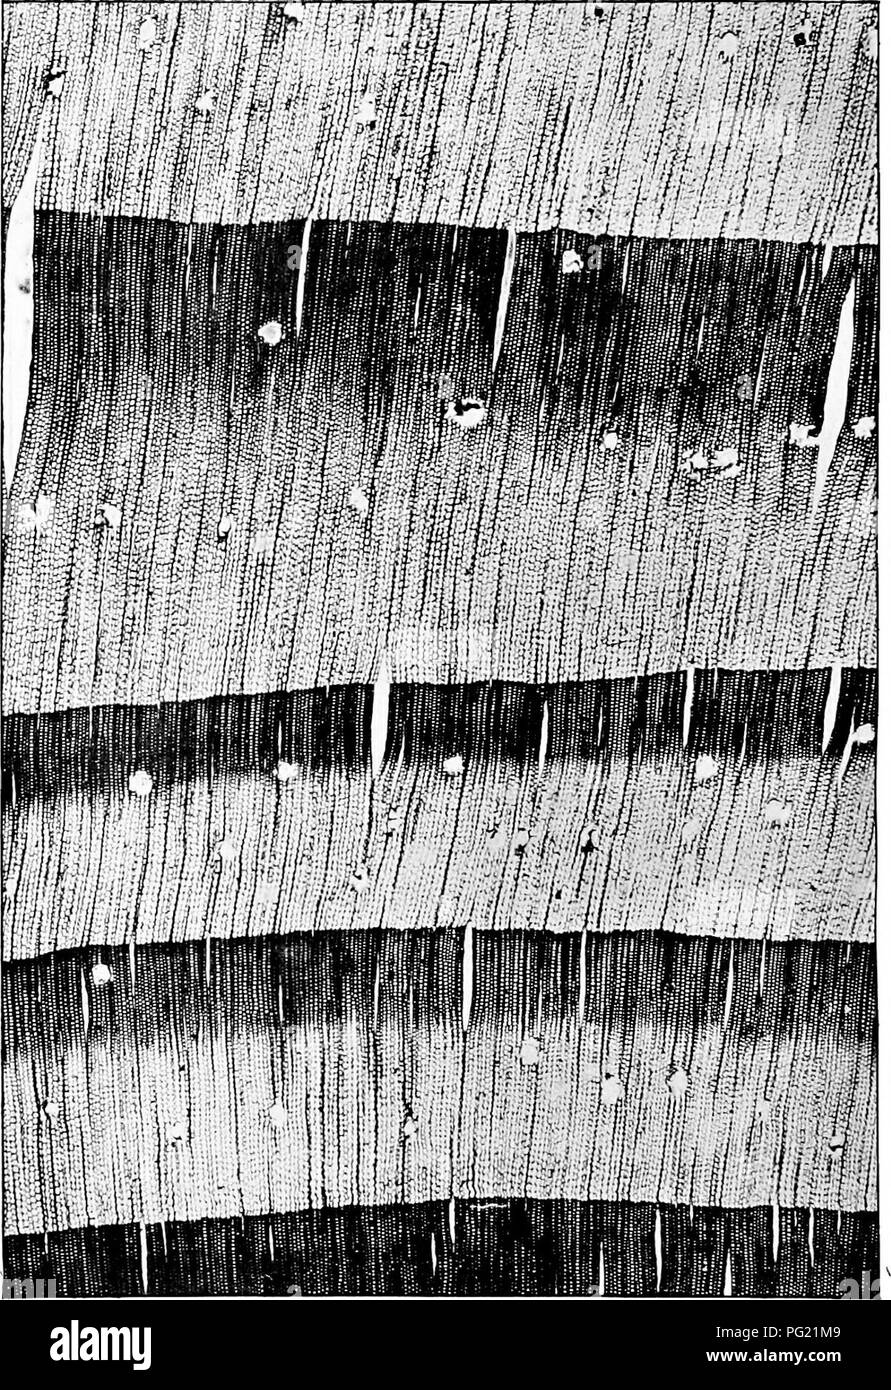 . Bekannte Bäume. Bäume. Querschnitt der korsische Kiefer Holz (X10 DIAMETERSJ.. Bitte beachten Sie, dass diese Bilder sind von der gescannten Seite Bilder, die digital für die Lesbarkeit verbessert haben mögen - Färbung und Aussehen dieser Abbildungen können nicht perfekt dem Original ähneln. extrahiert. Boulger, George Simonds, 1853-1922. London, New York, Cassell Stockfoto